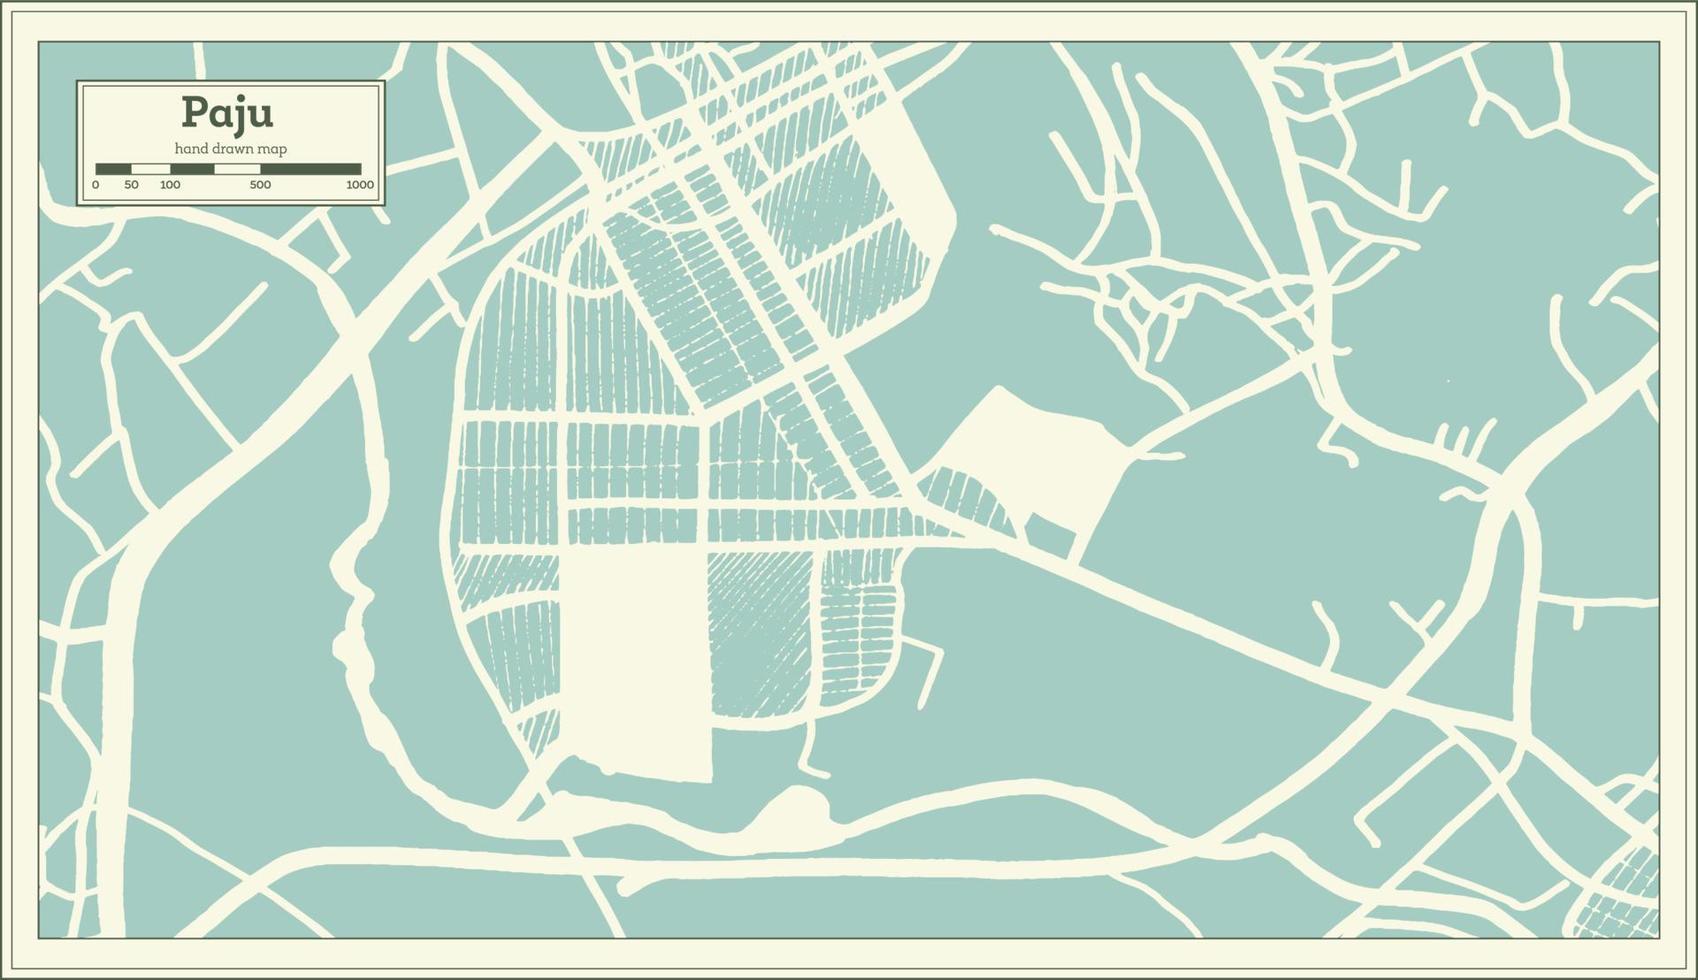 paju zuiden Korea stad kaart in retro stijl. schets kaart. vector